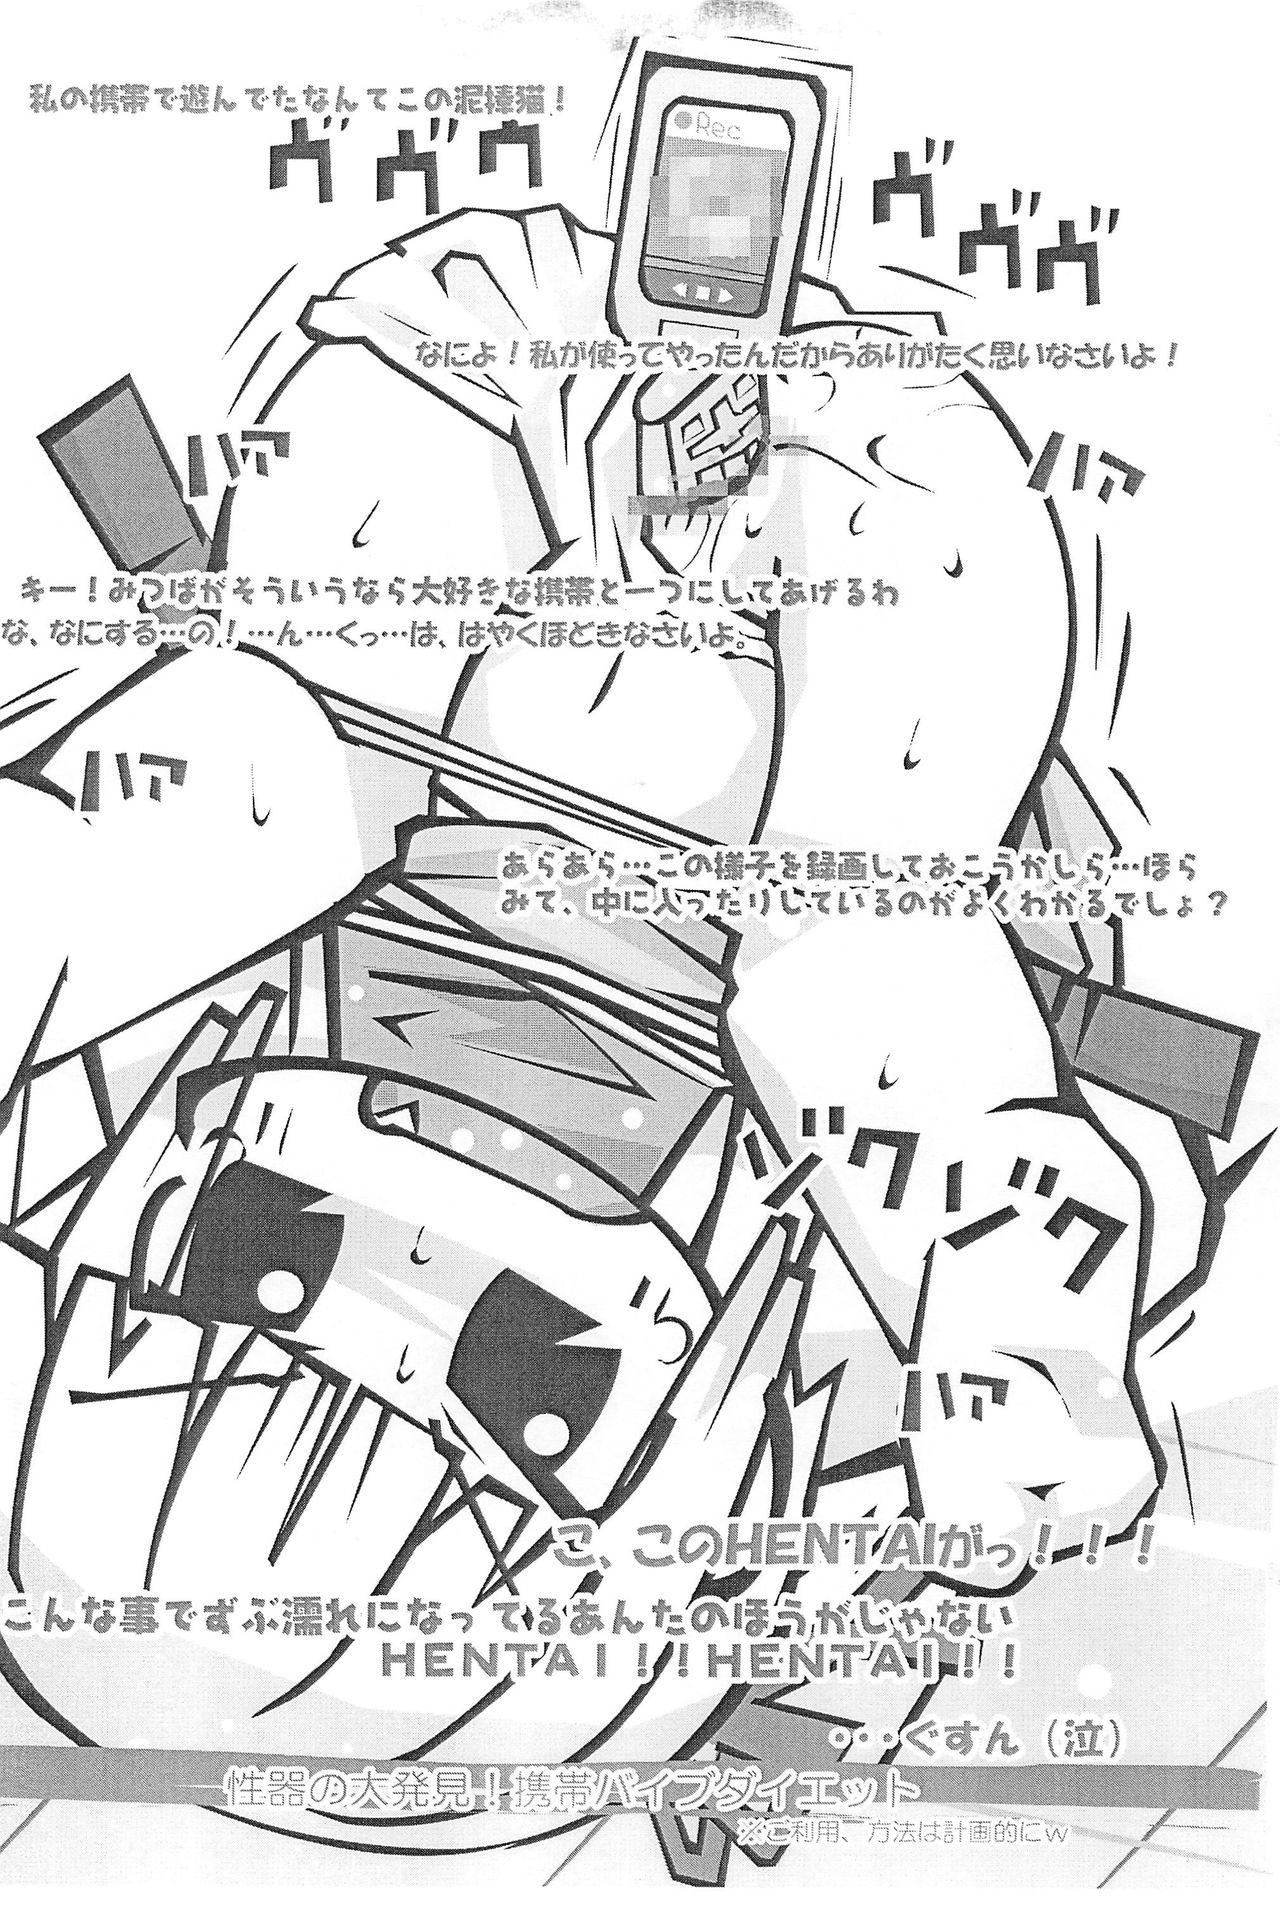 Tetona Honiki-Hentai 6 no 3 - Mitsudomoe Cum Shot - Page 9